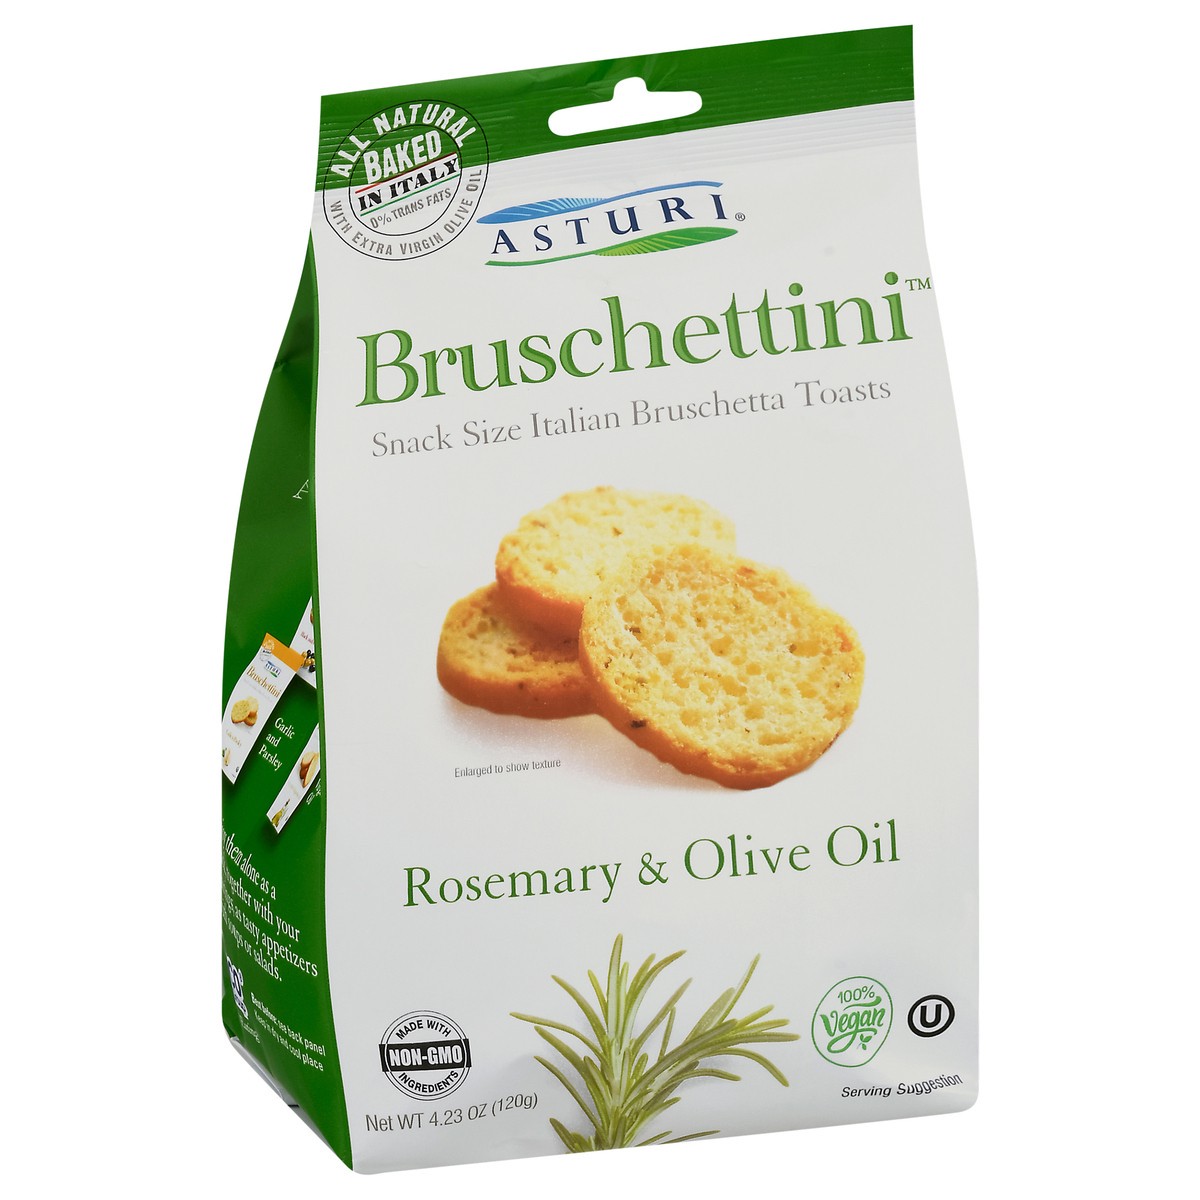 slide 2 of 9, Asturi Bruschettini Snack Size Italian Rosemary & Olive Oil Bruschetta Toasts 4.23 oz, 4.23 oz